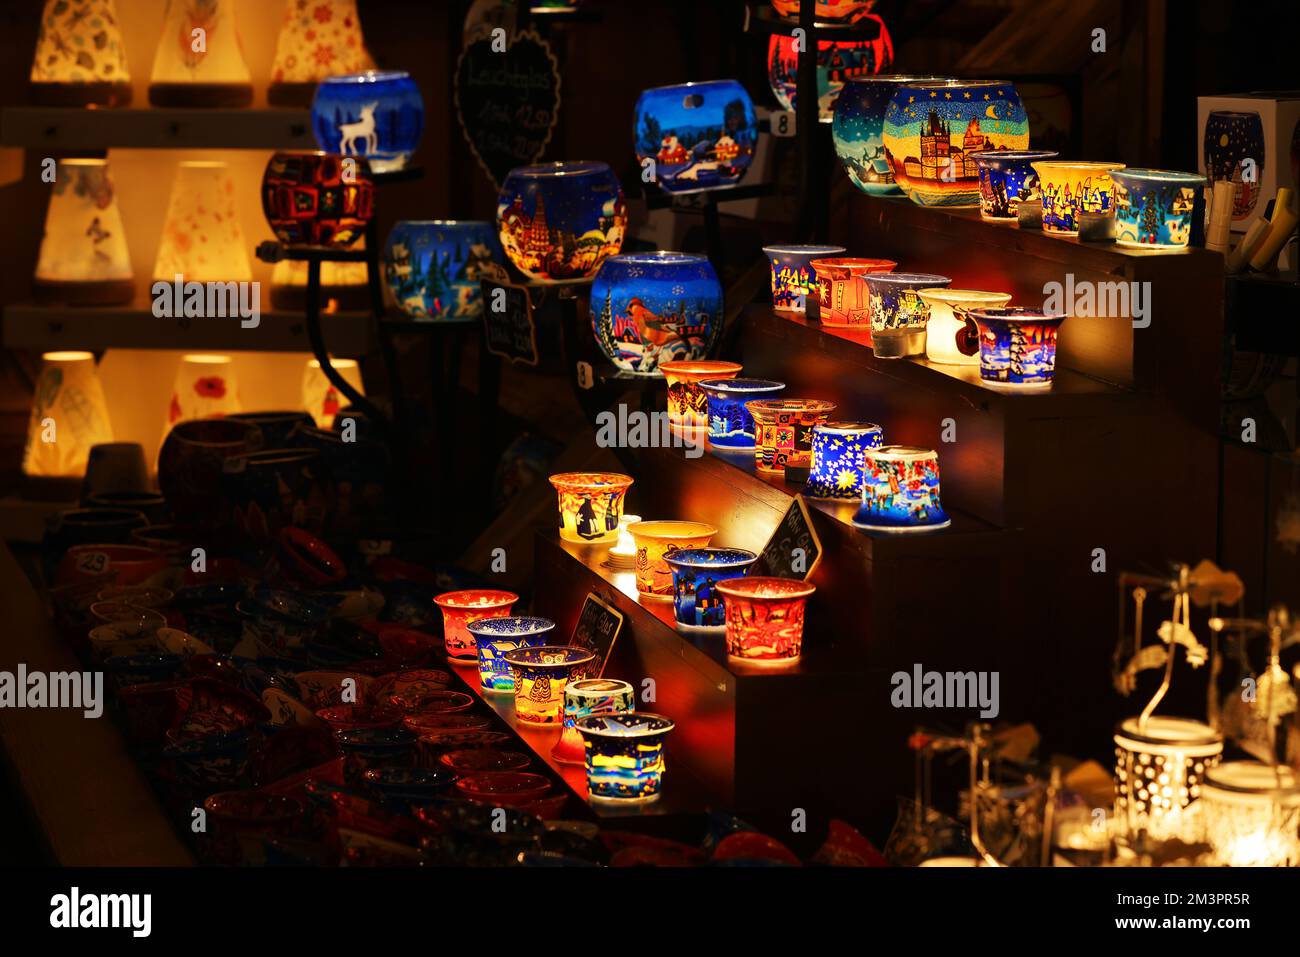 Teelichter, Glas, Nürnberg, Nürnberger Weihnachtsmarkt, Nürnberger Christkindlesmarkt, mit Engeln, Anhänger, Kugeln, Glühwein und vielen Grillsachen! Stock Photo